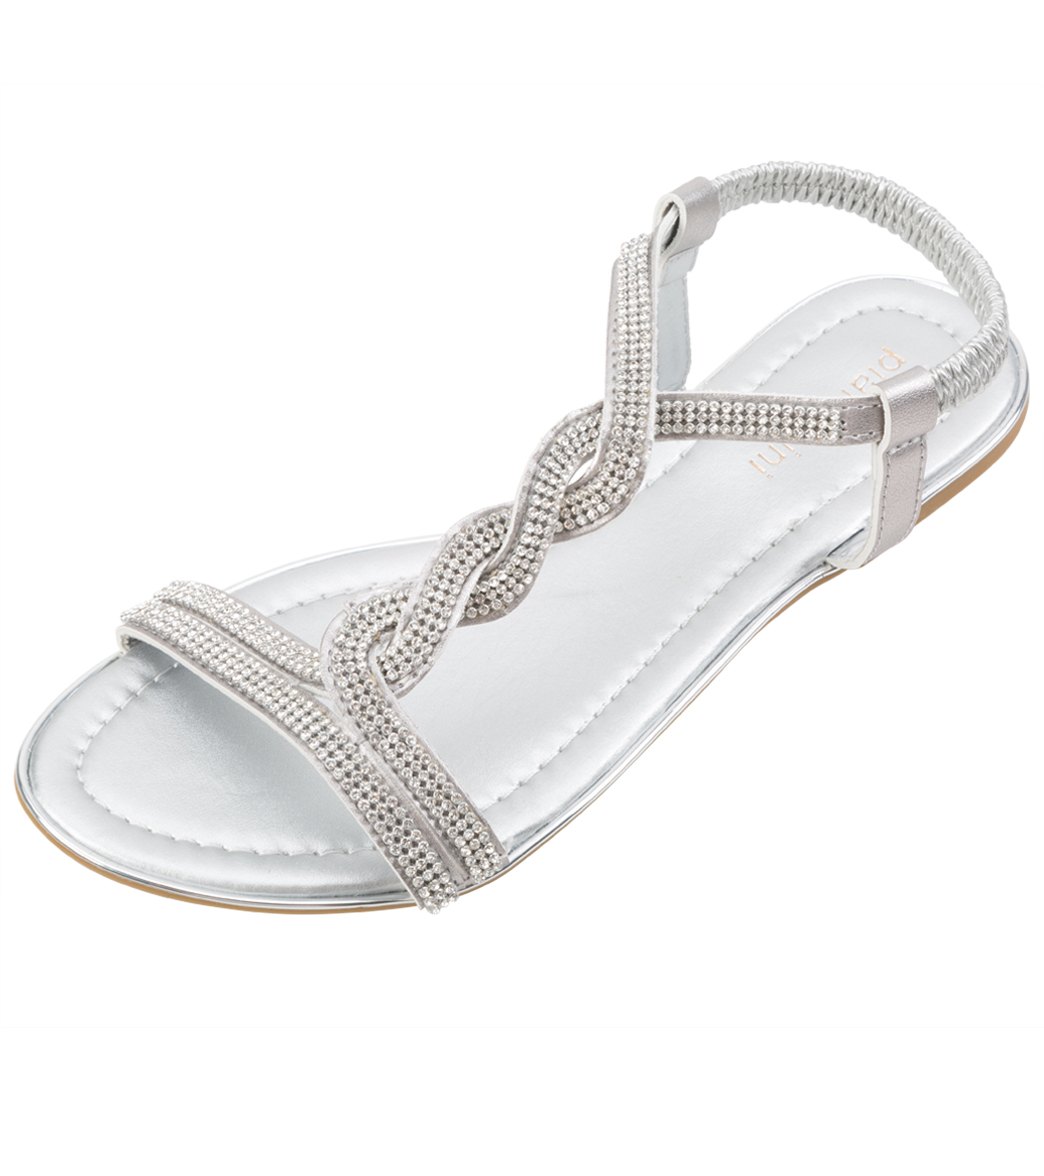 Pia Rossini Women's Nero Sandals - Silver 9.5 Eu 40 - Swimoutlet.com